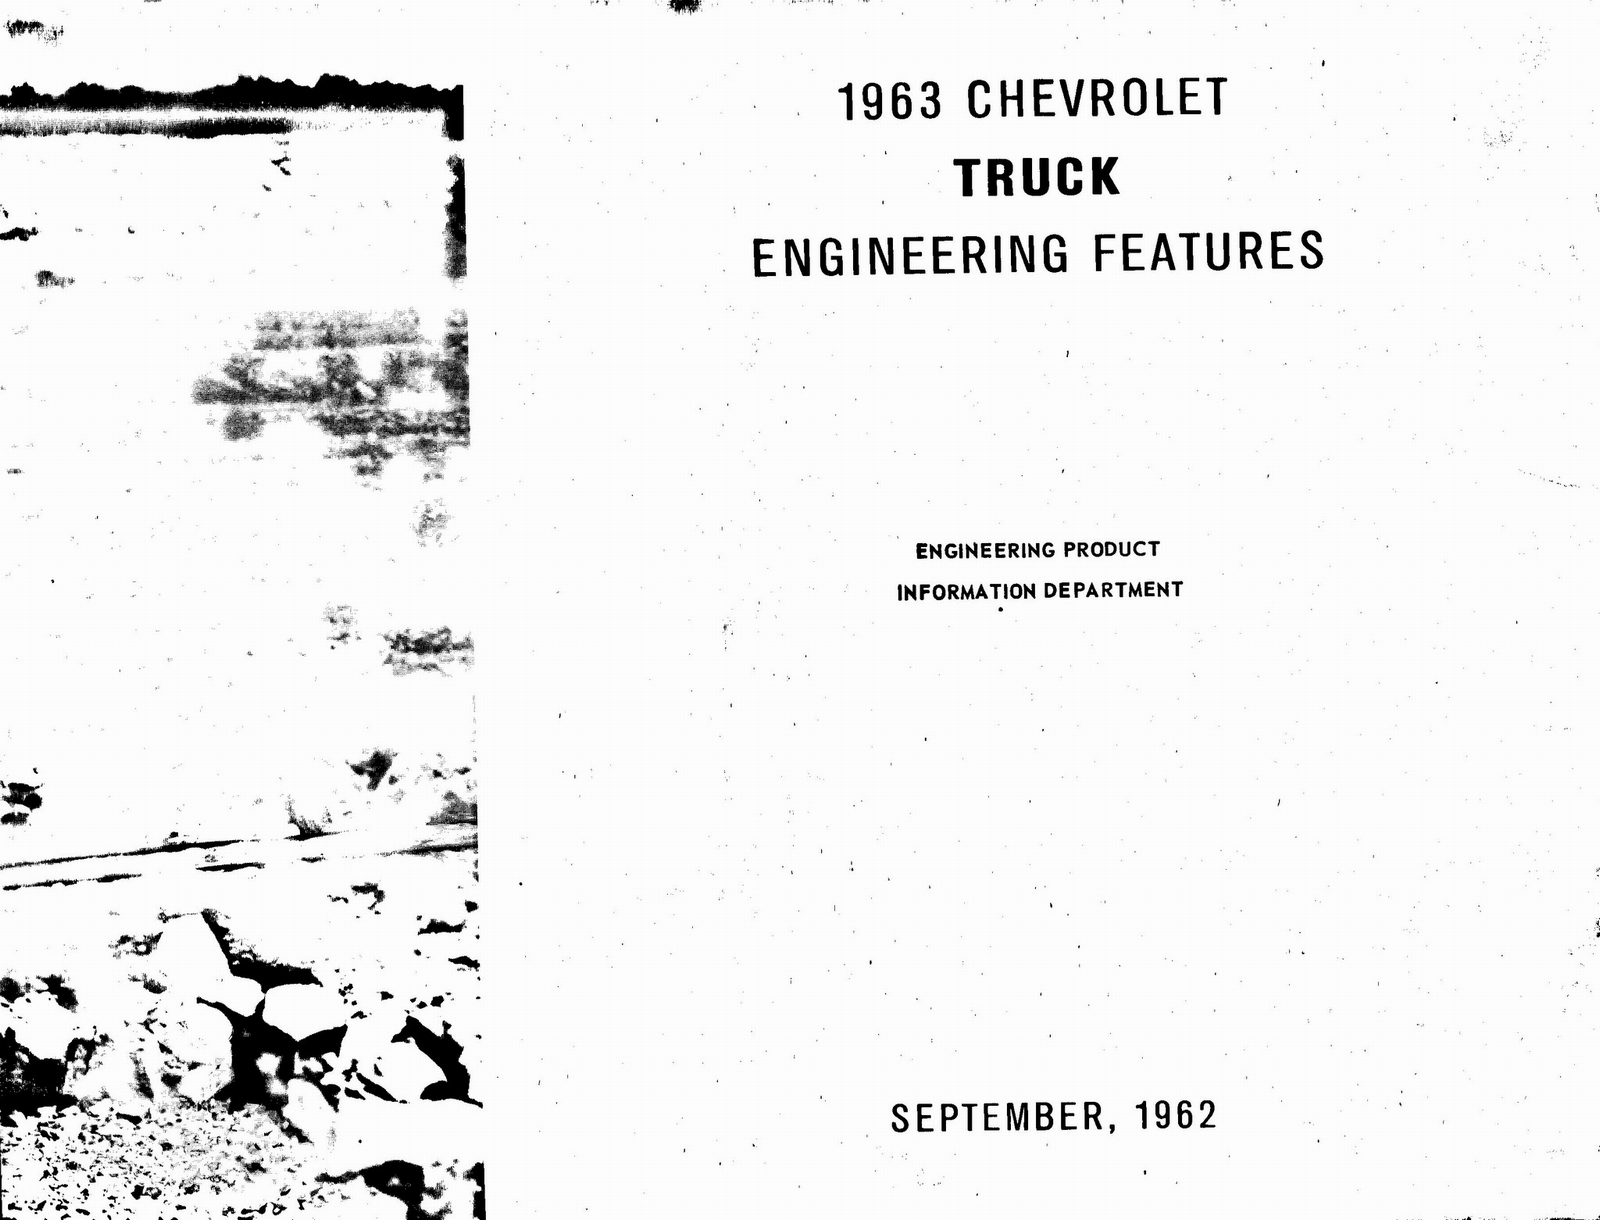 n_1963 Chevrolet Truck Engineering Features-02.jpg